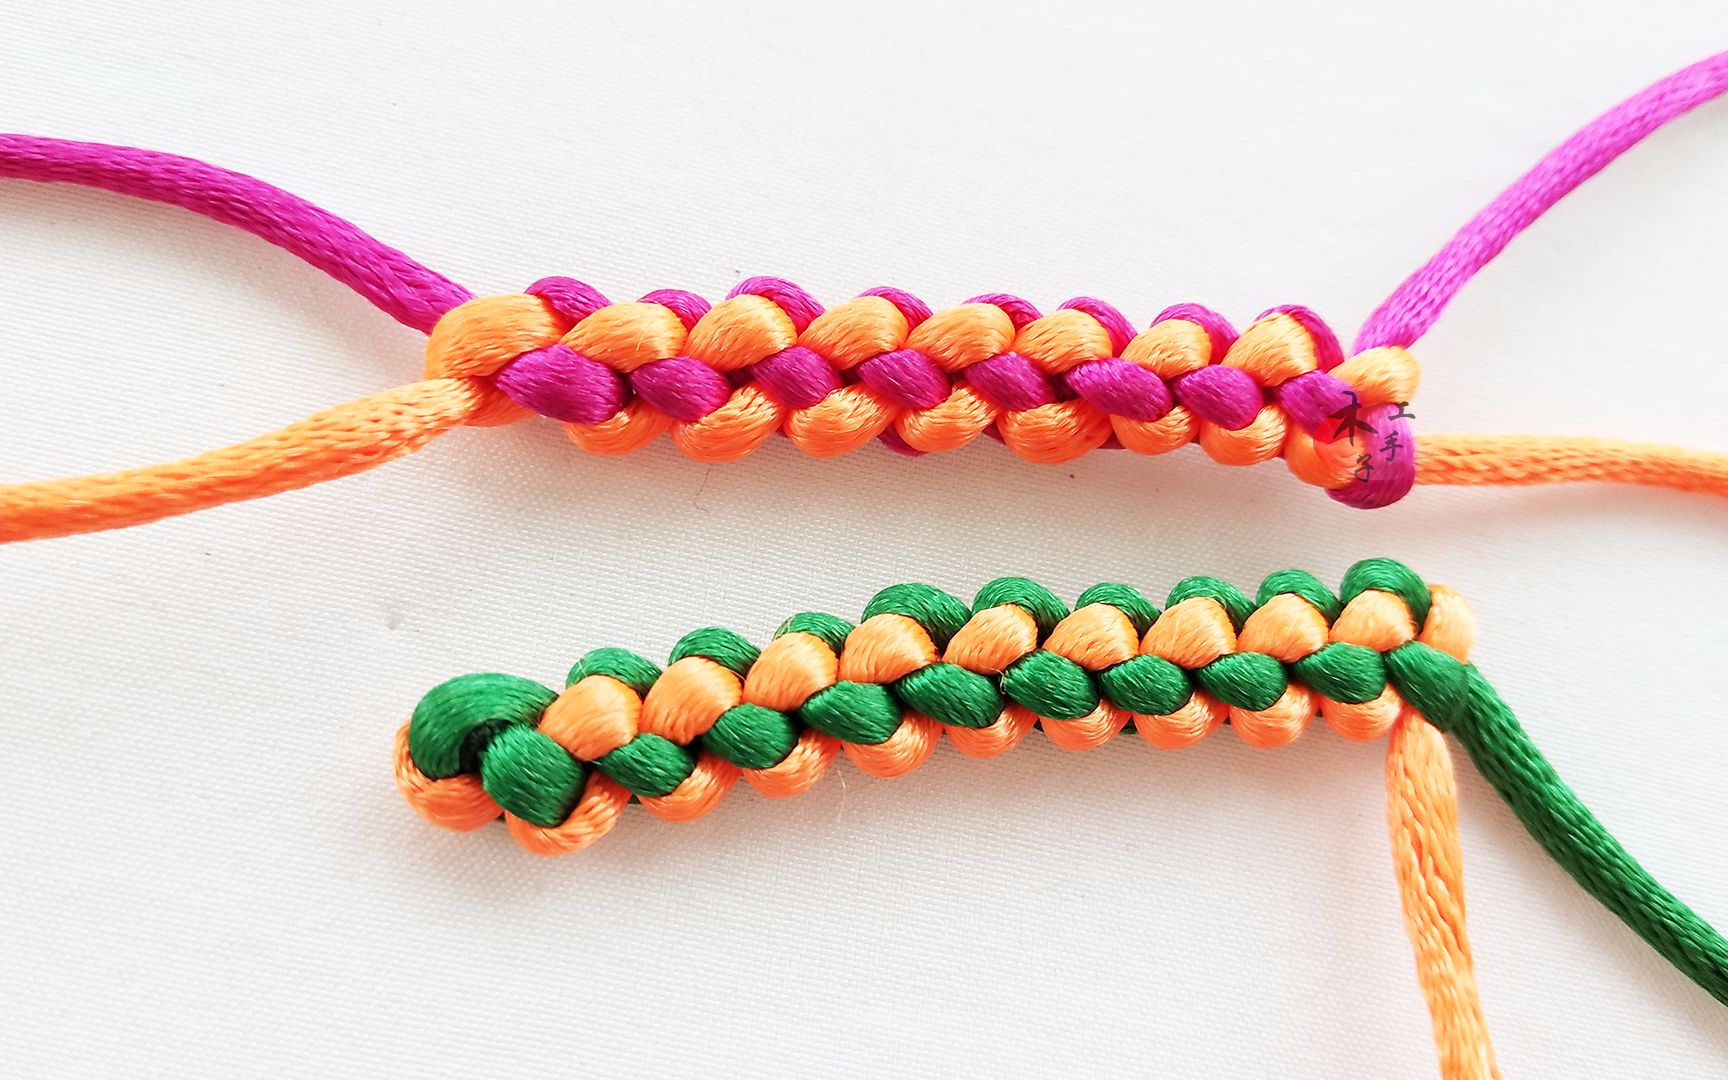 木子手工:简单的凤尾结锁结红绳编织方法,让你一学就会